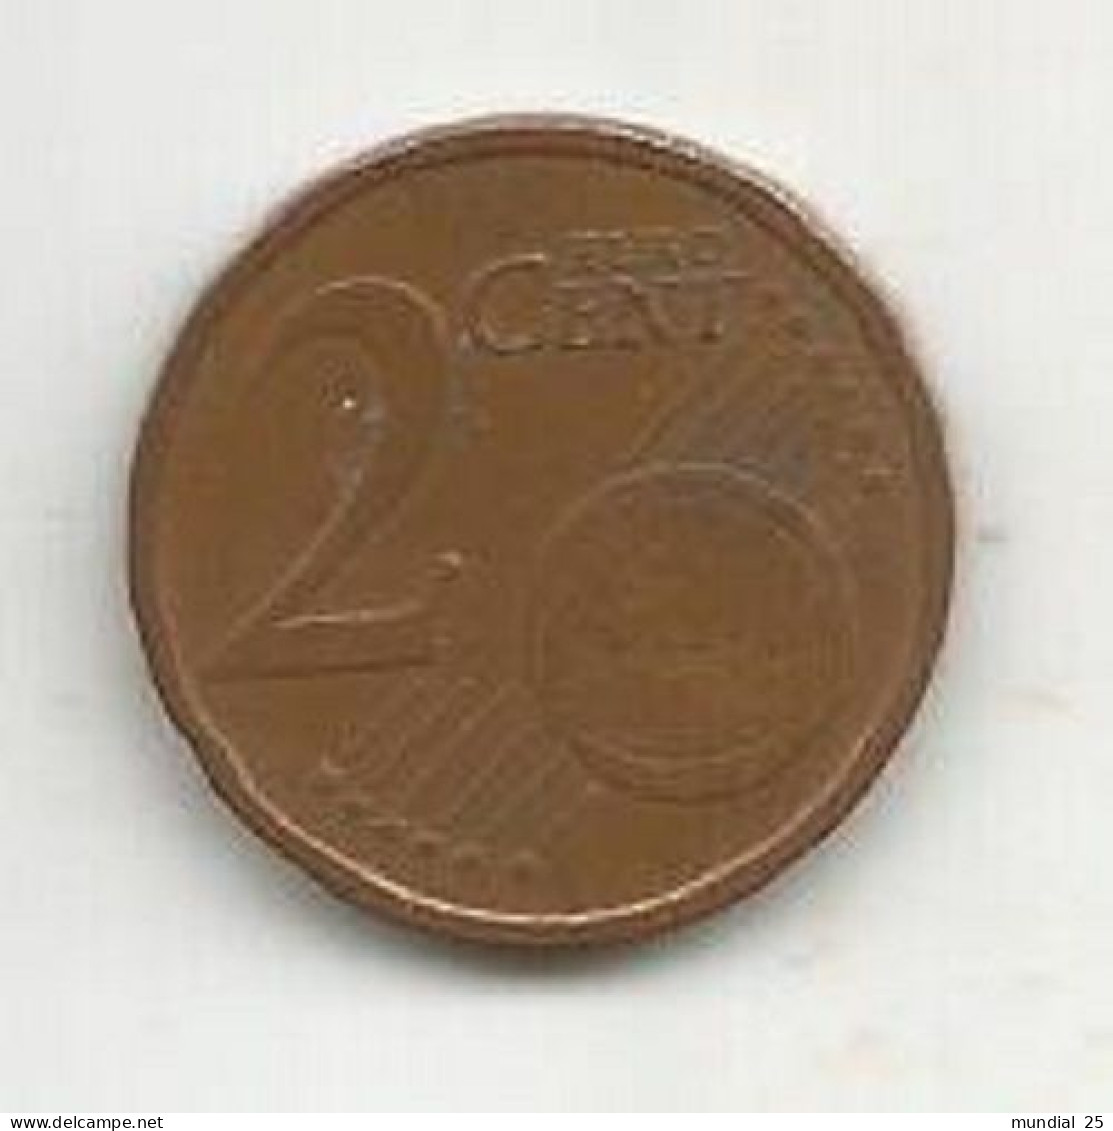 ITALY 2 EURO CENT 2004 (R) - Italy